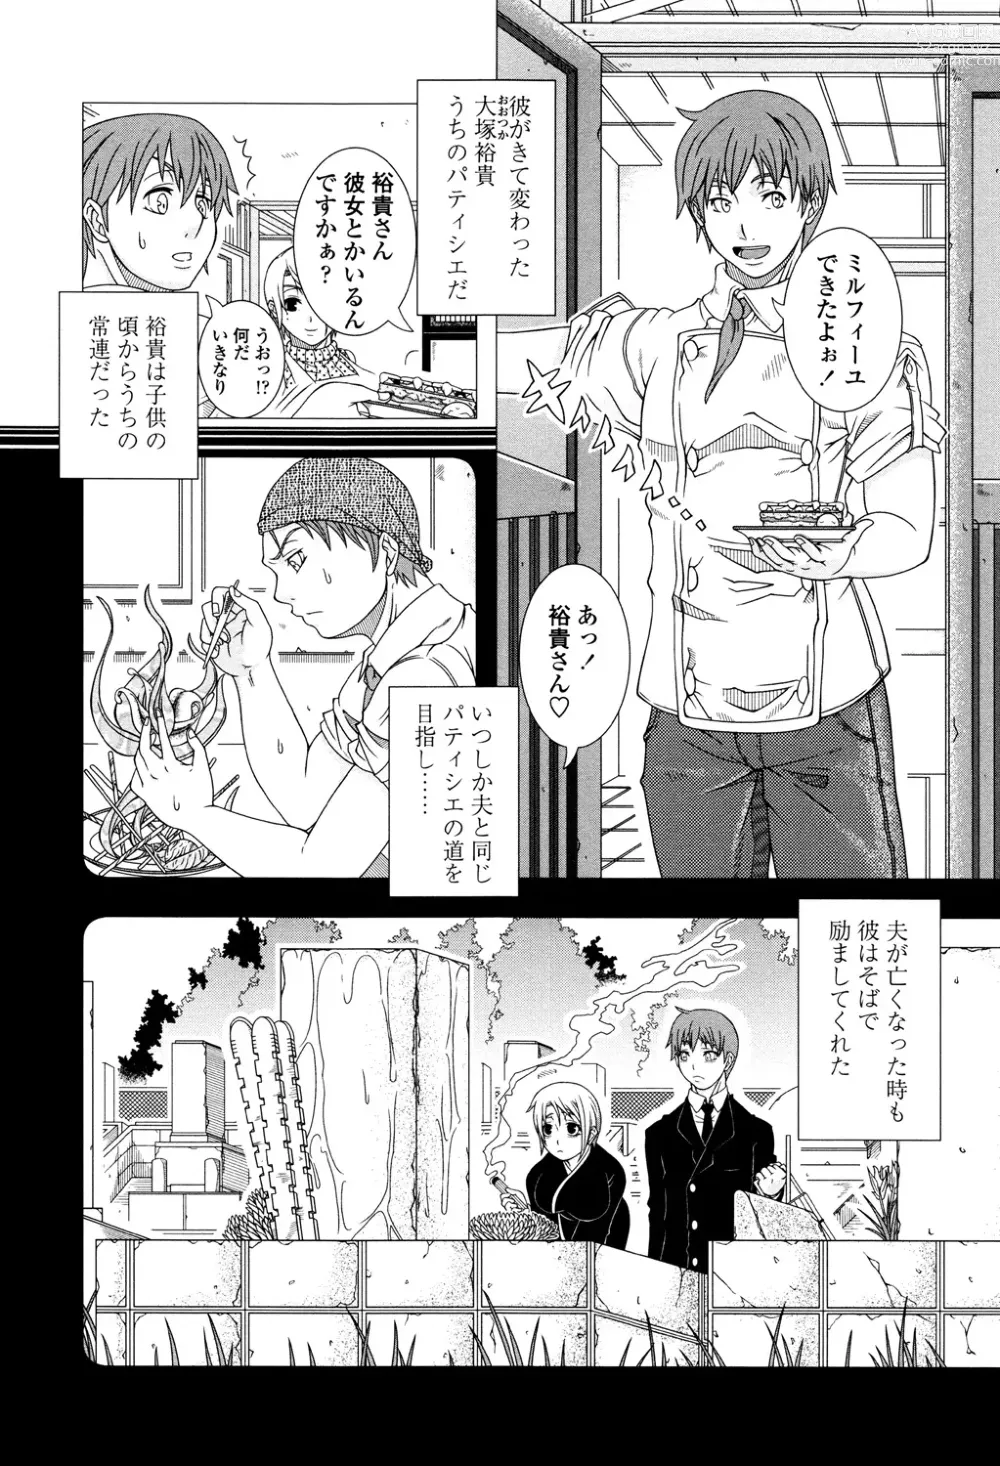 Page 192 of manga Hitozuma Life - Married Woman Life